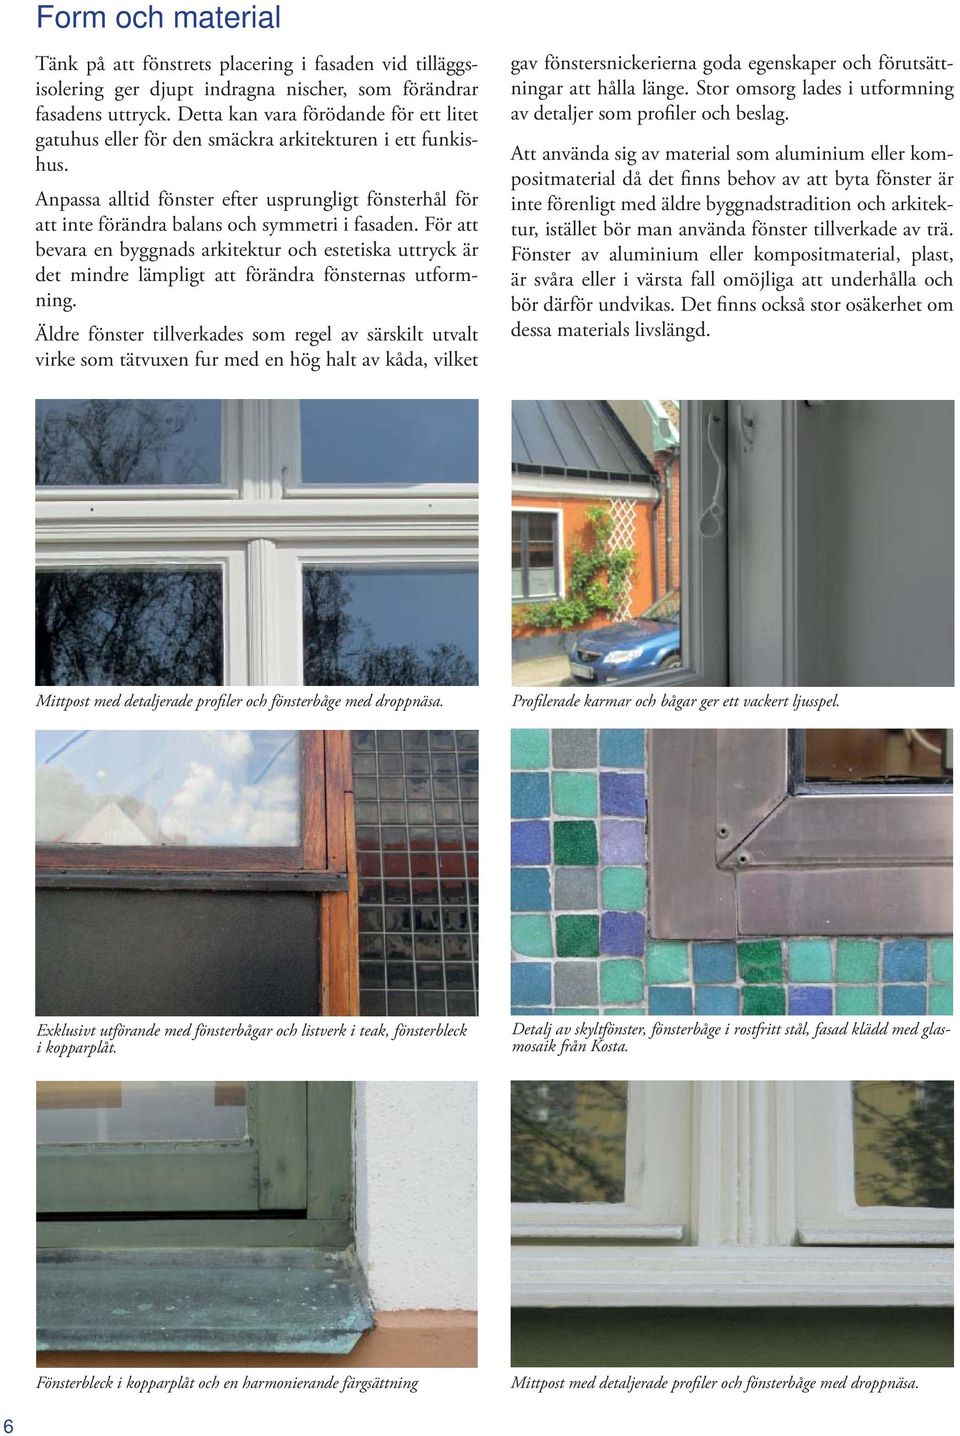 Anpassa alltid fönster efter usprungligt fönsterhål för att inte förändra balans och symmetri i fasaden.